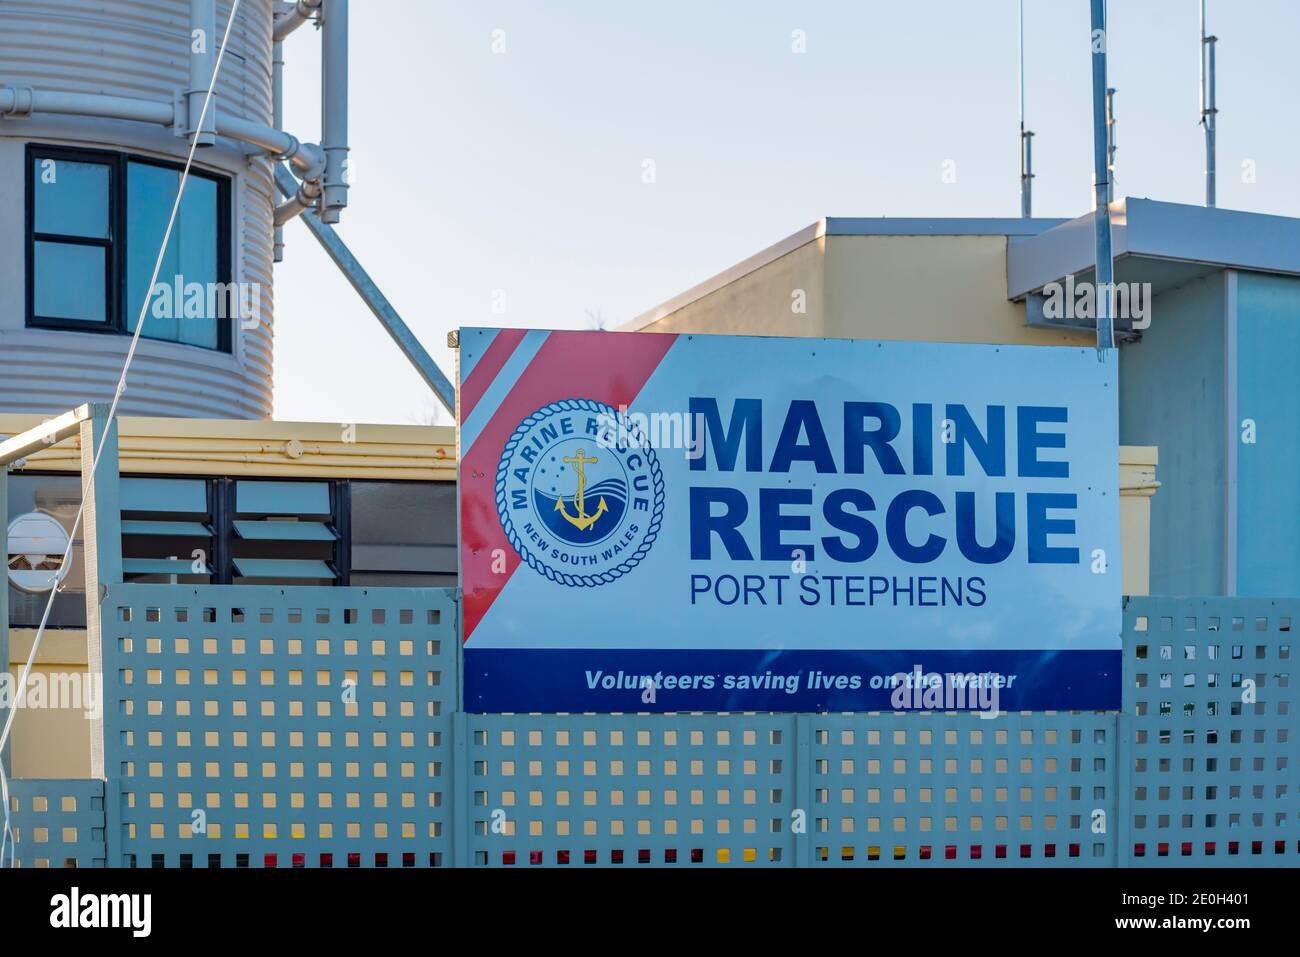 El centro de mando de New South Wales Marine Rescue en el antiguo faro de Nelson Bay con vistas a Port Stephens en New South Wales, Australia Foto de stock